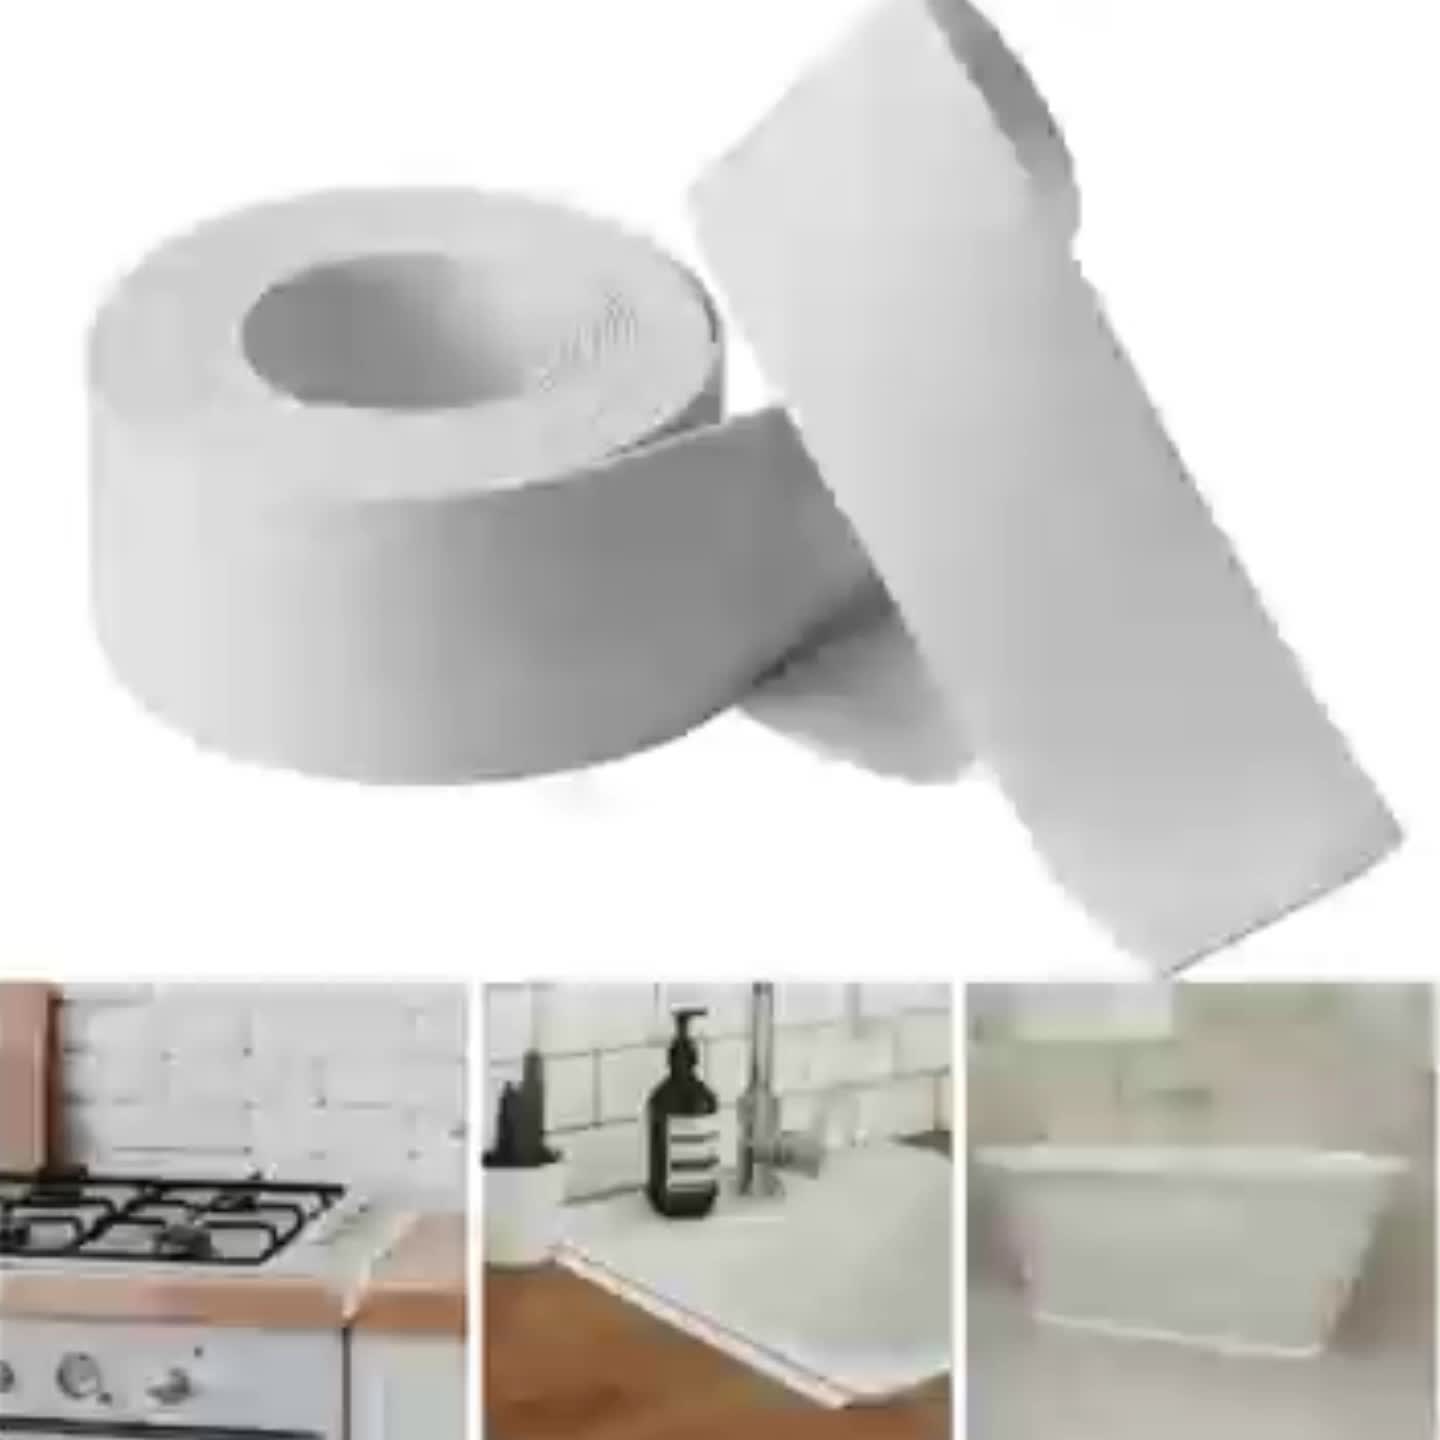 Cinta selladora de calafateo impermeable, autoadhesiva de PVC, cinta de  sellado de 1.5 x 10.5 pies, color blanco, para fregadero de cocina, baño